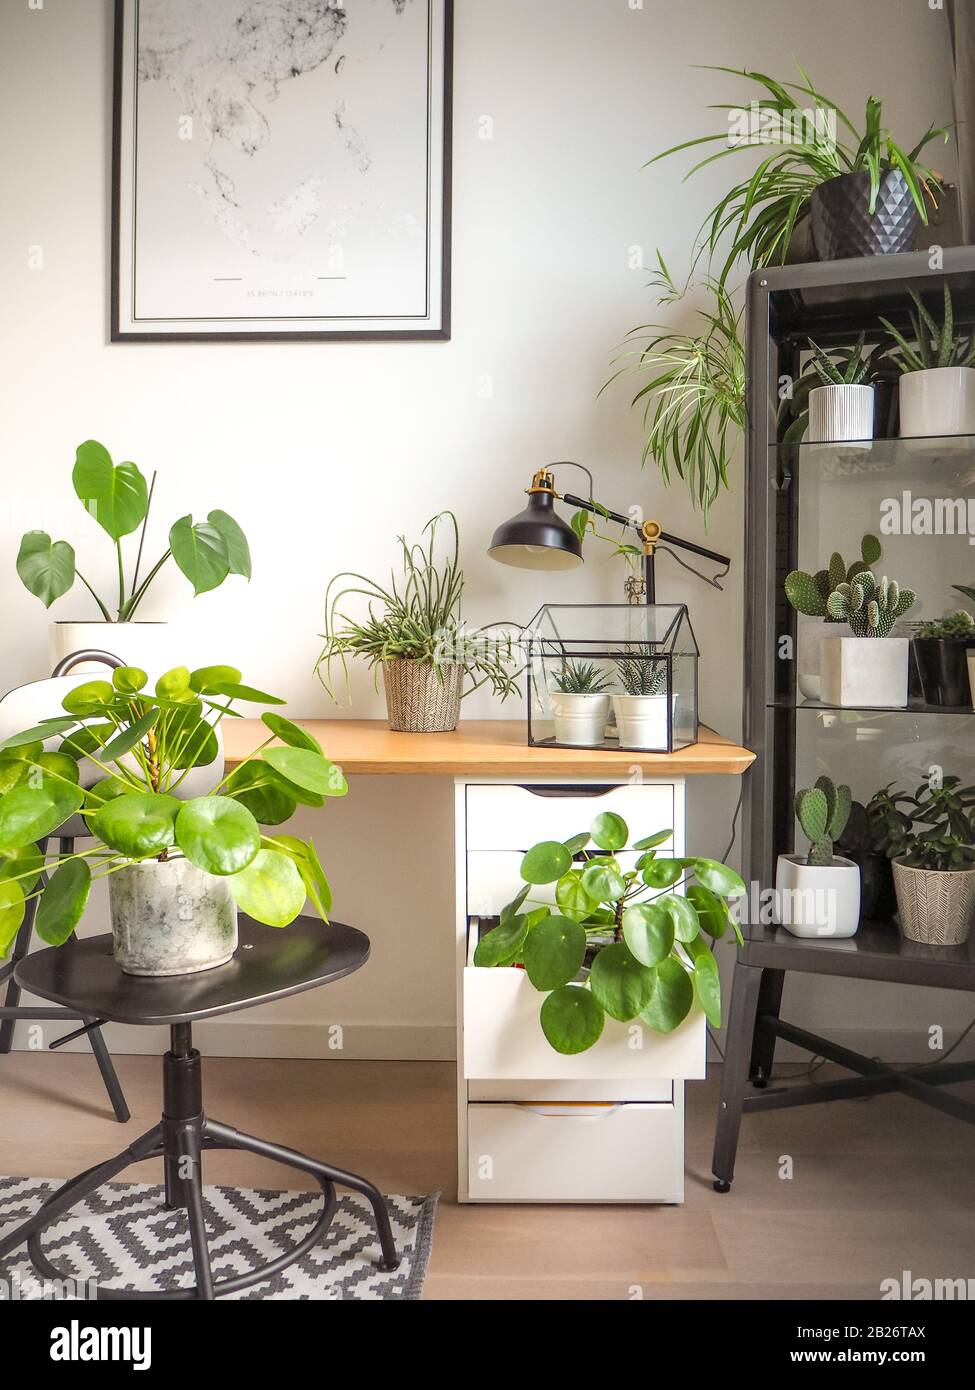 Moderner Arbeitsraum in Schwarz-Weiß-Industrie mit zahlreichen grünen Zimmerpflanzen wie Pfannkuchenpflanzen und Kakteen, die ein urbanes Dschungelgefühl erzeugen. Stockfoto